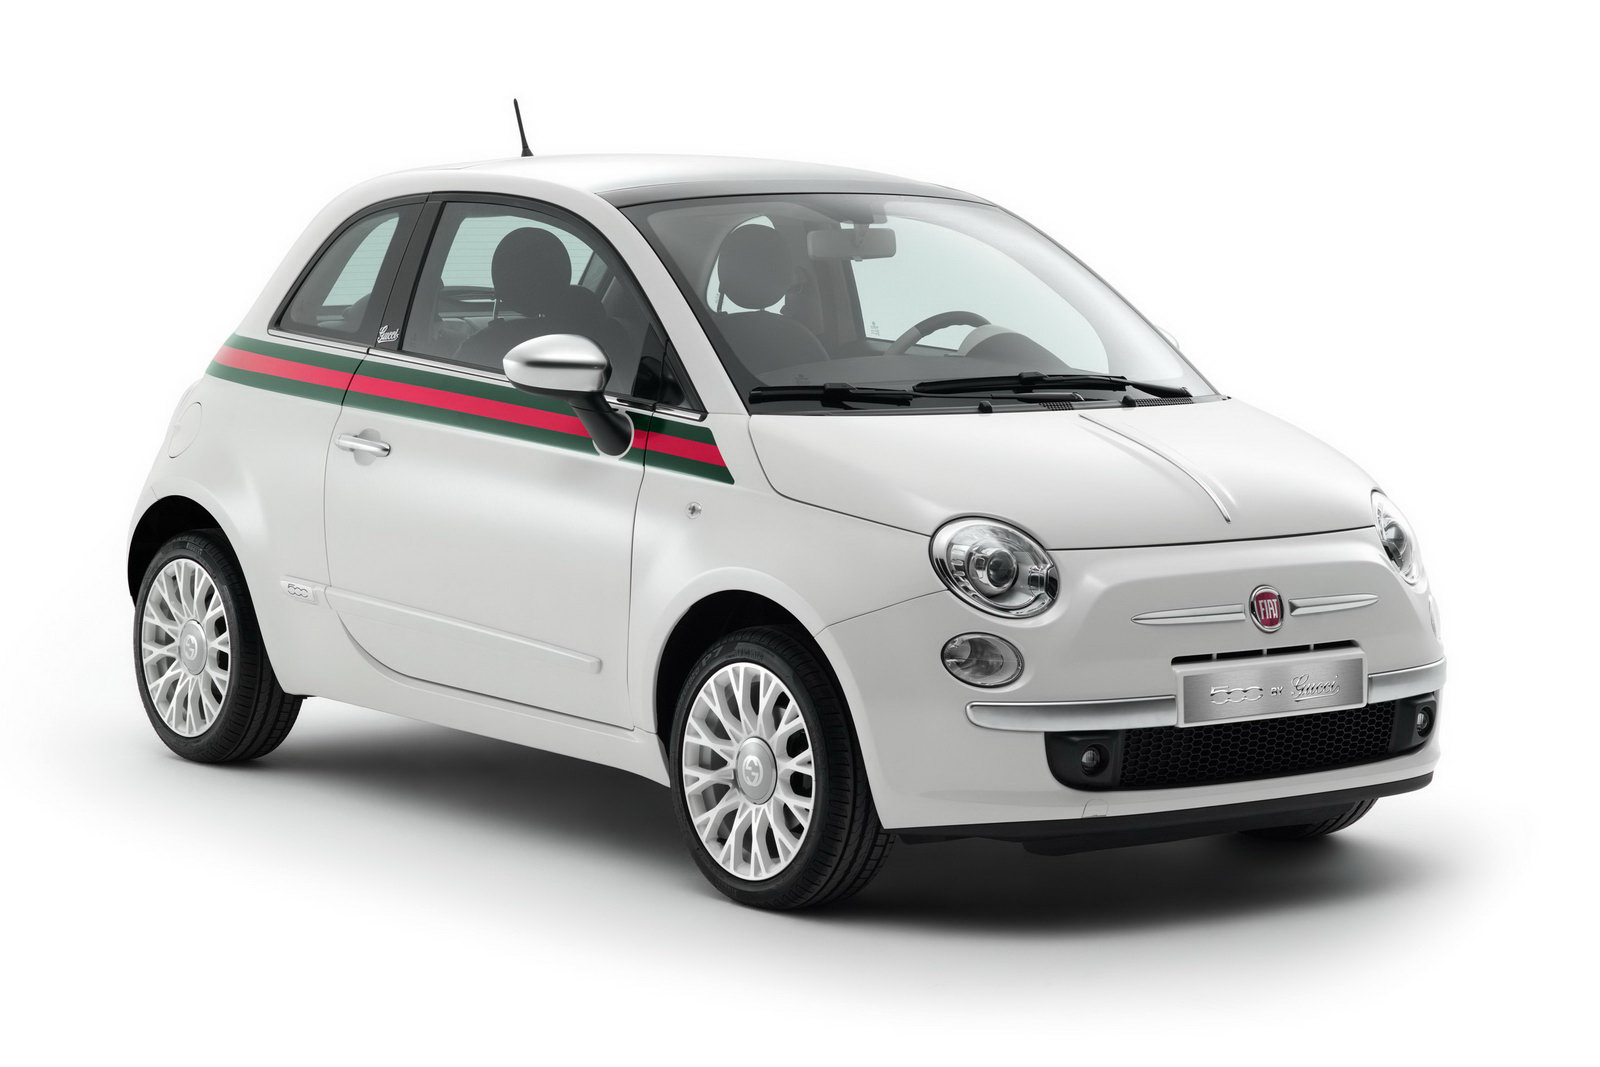 Fiat 500: 16.445 USDCó thể nói, Fiat 500 2014 là tổng hòa của thiết kế Ý đẹp mắt, chất lượng không thua kém Mini Cooper trong khi giá bán hợp túi tiền hơn nhiều.